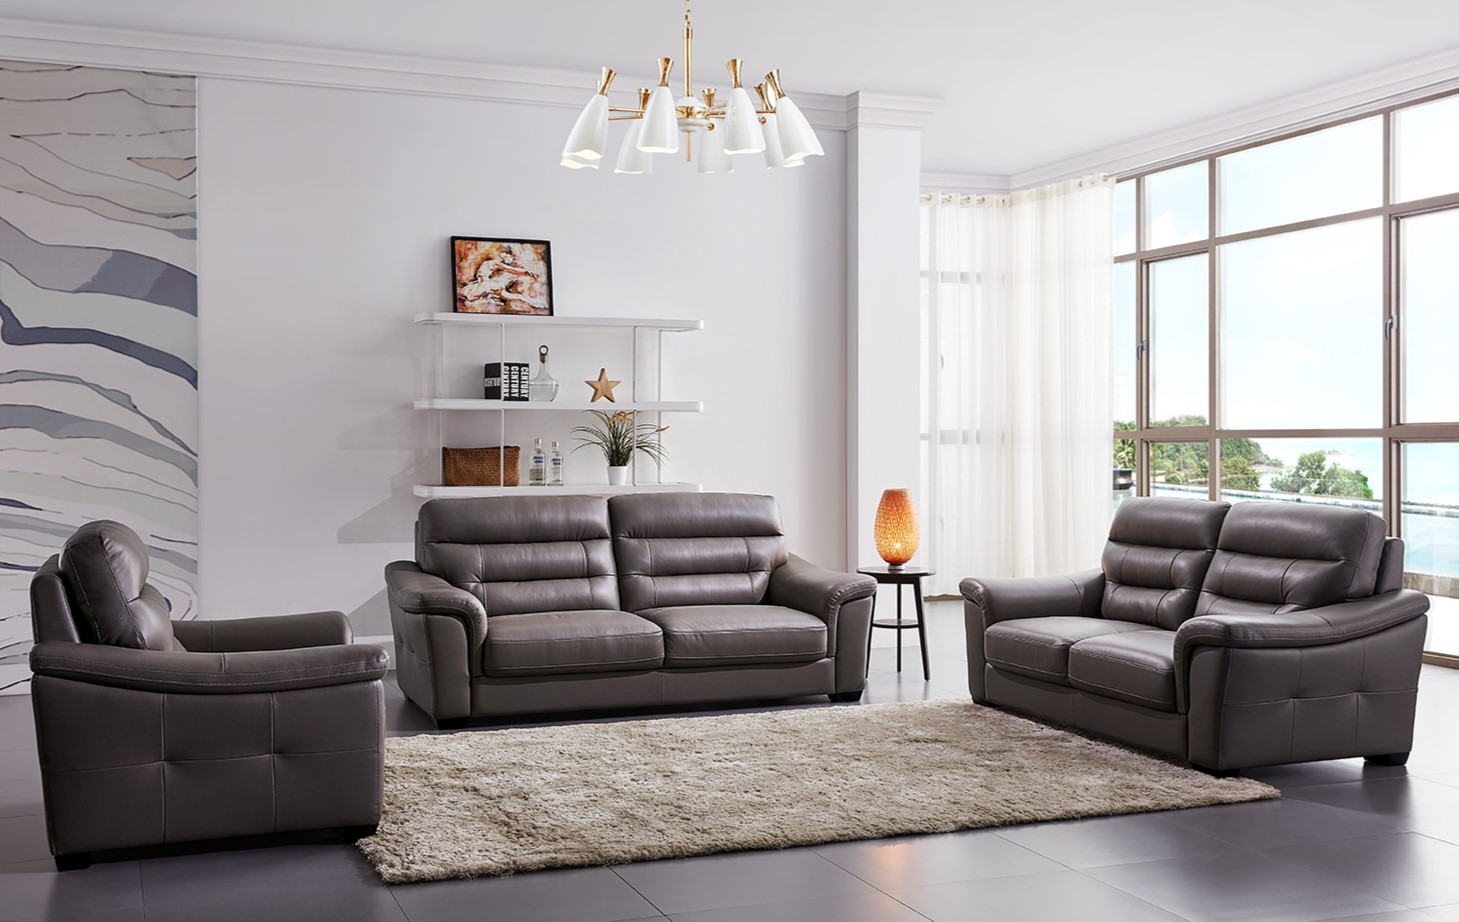 Из двух одинаковых диванов и кресла можно создать стильную зону отдыха